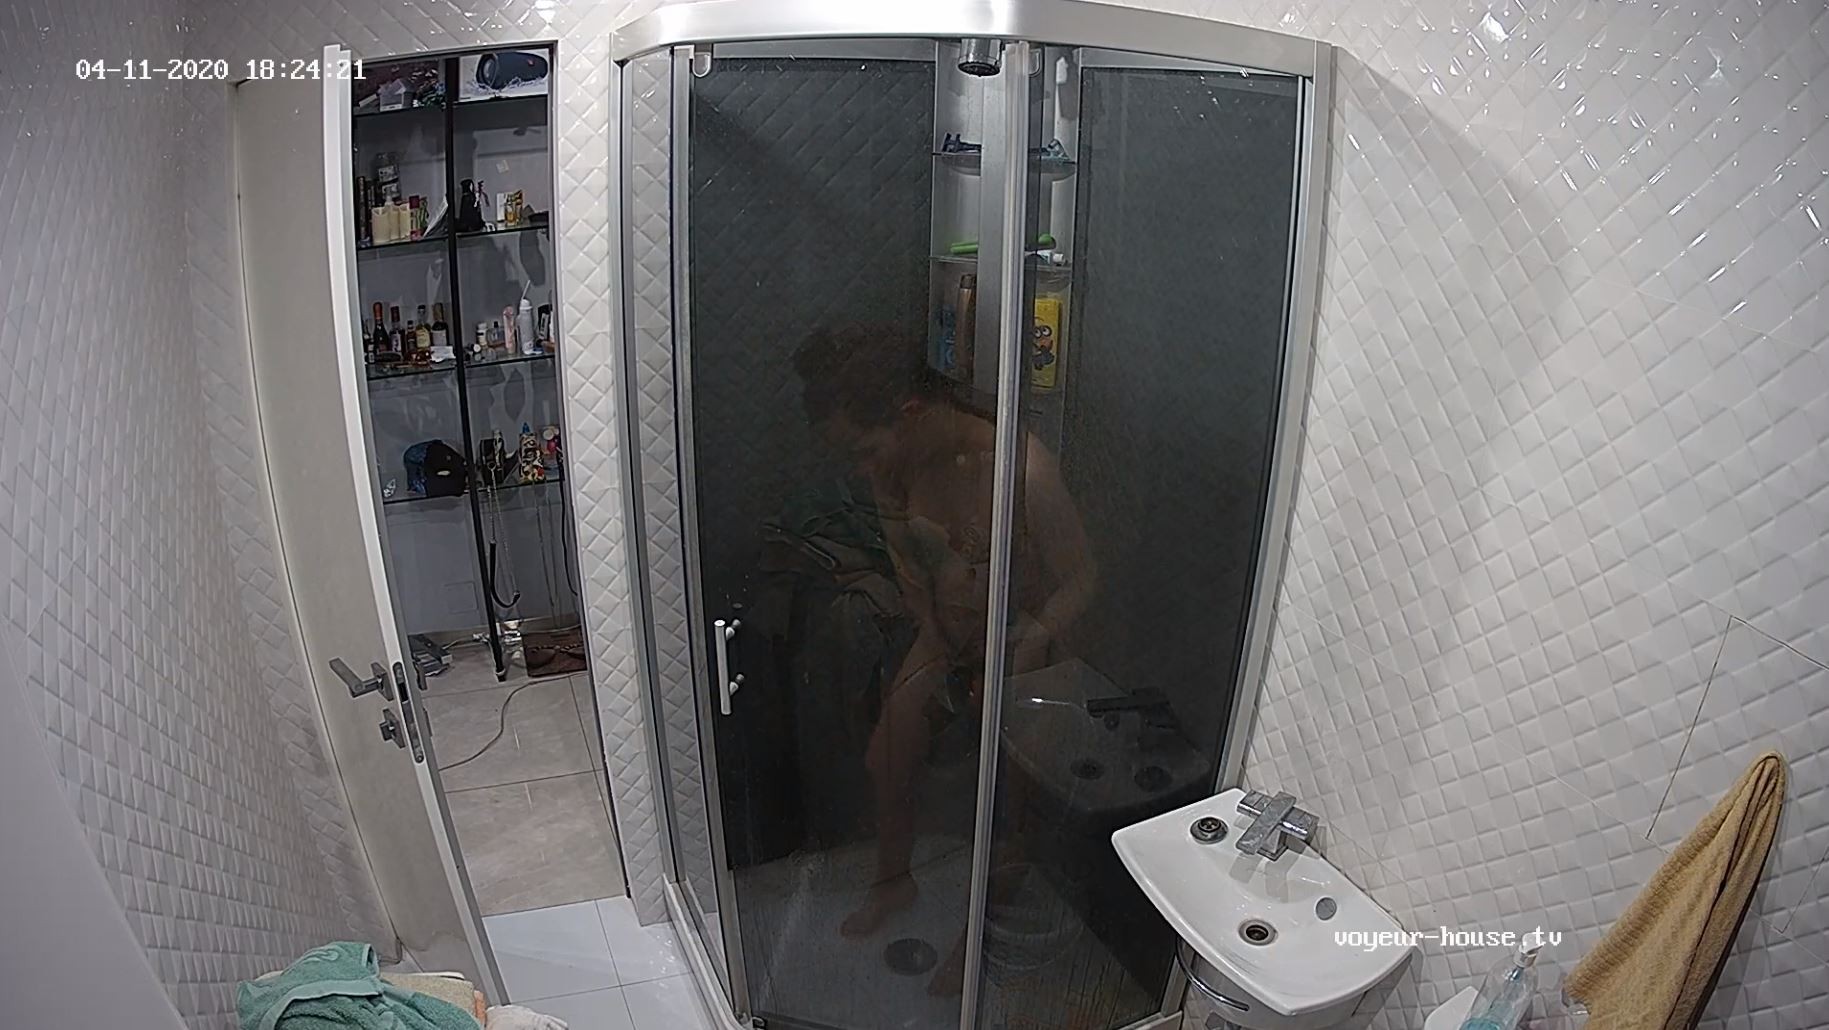 Fiona shower after sex, Apr11/20